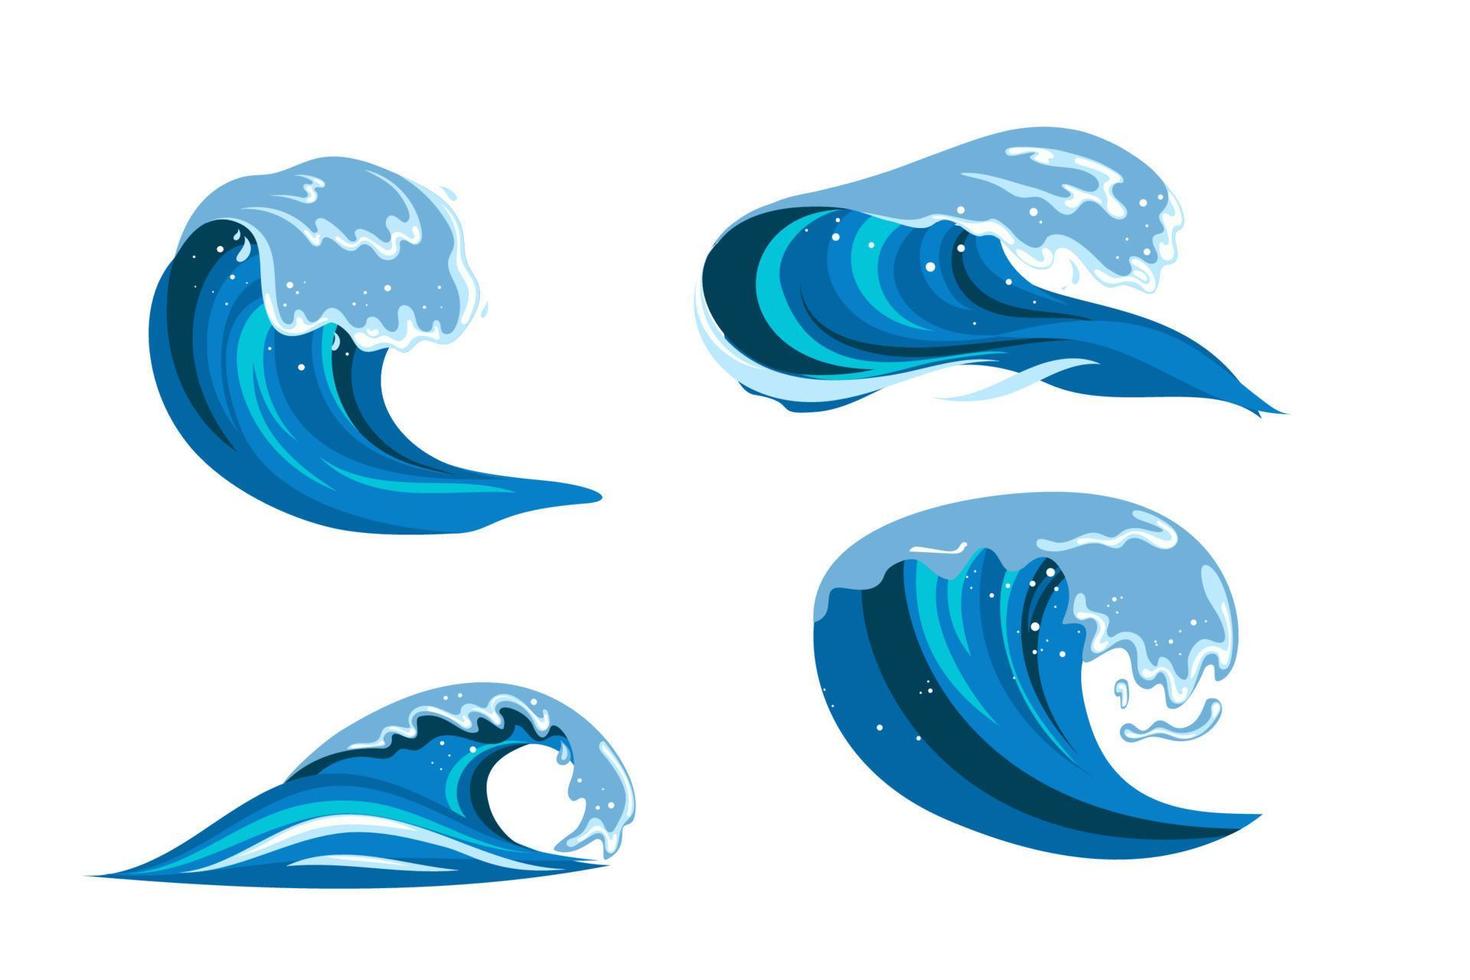 onda tsumani em estilo cartoon plana. grande respingo de água tropical azul com espuma branca. ilustração vetorial isolada em fundo branco vetor